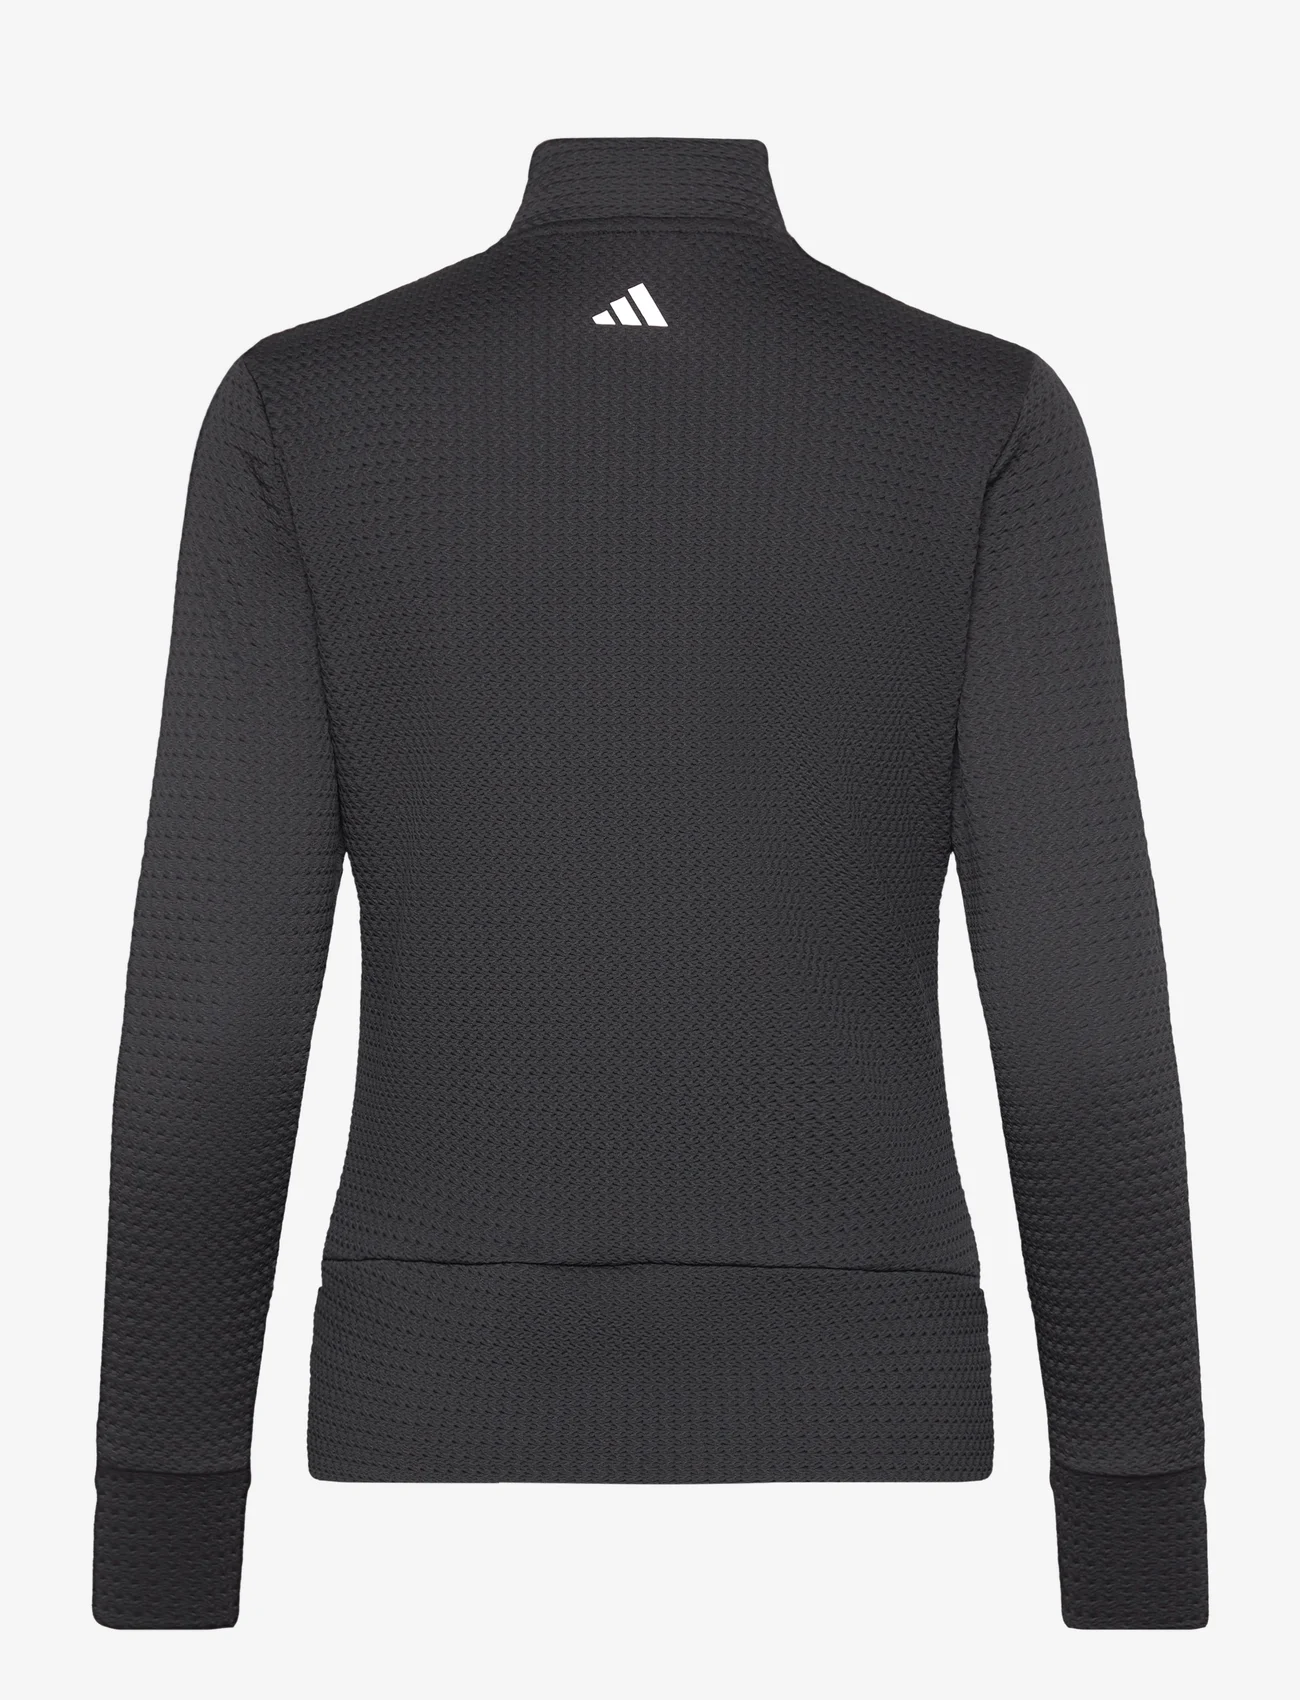 adidas Golf - W ULT C TXT JKT - jackets - black - 1